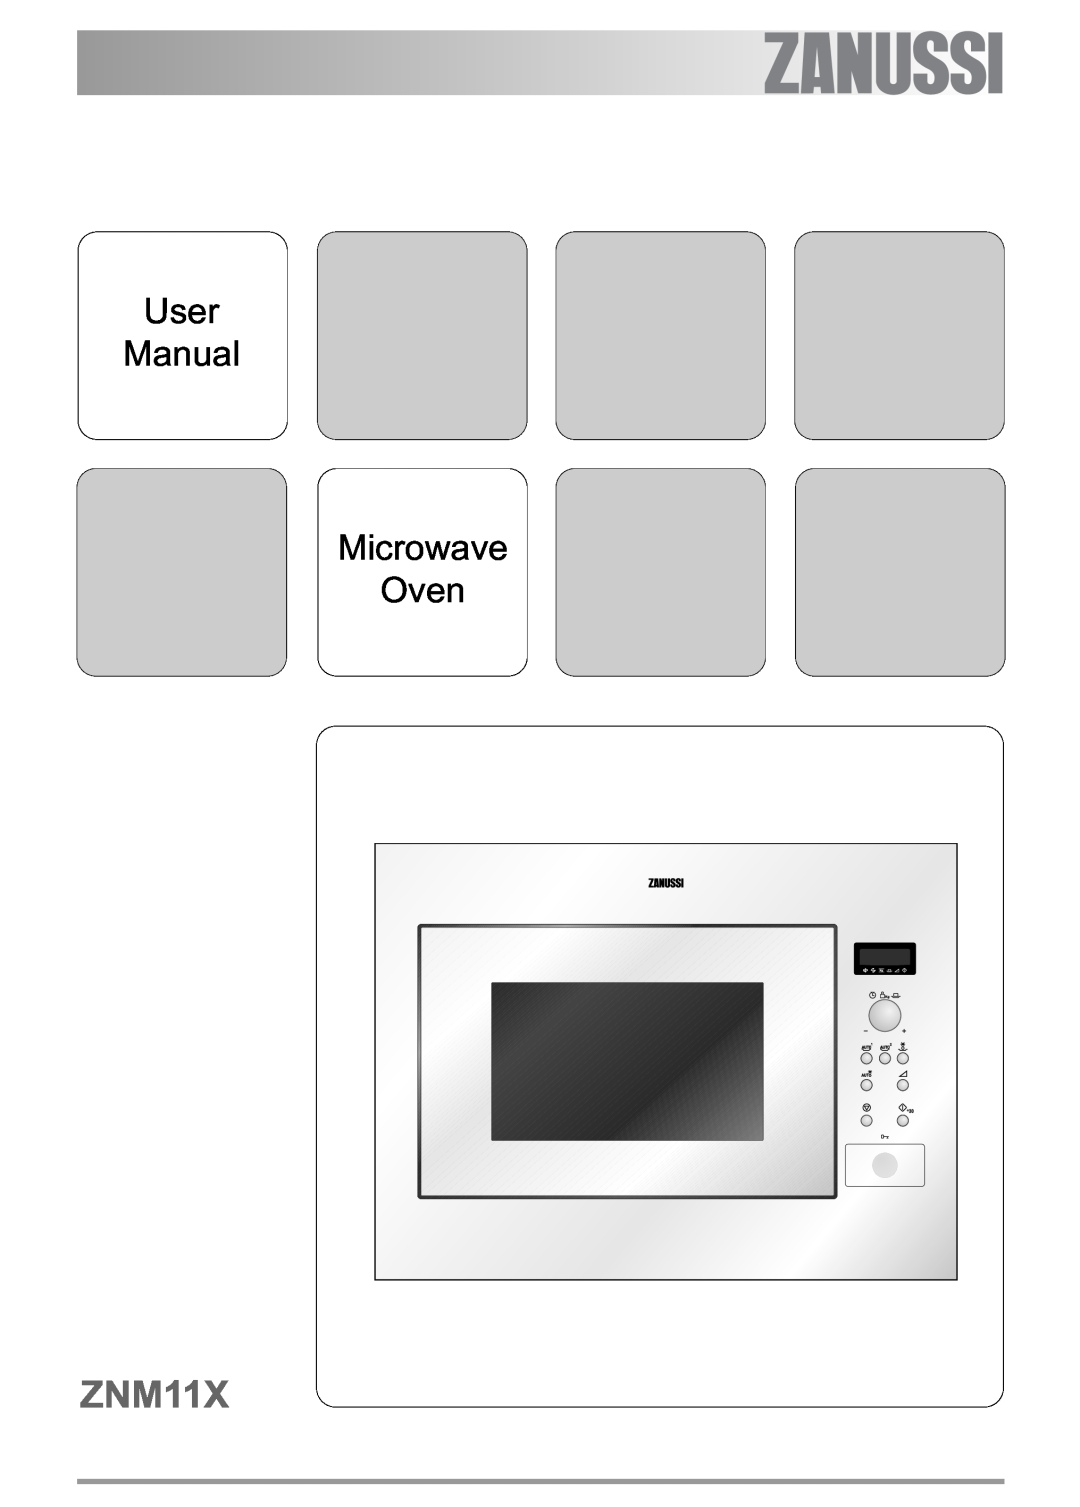 Zanussi ZNM11X user manual User Manual Microwave Oven 